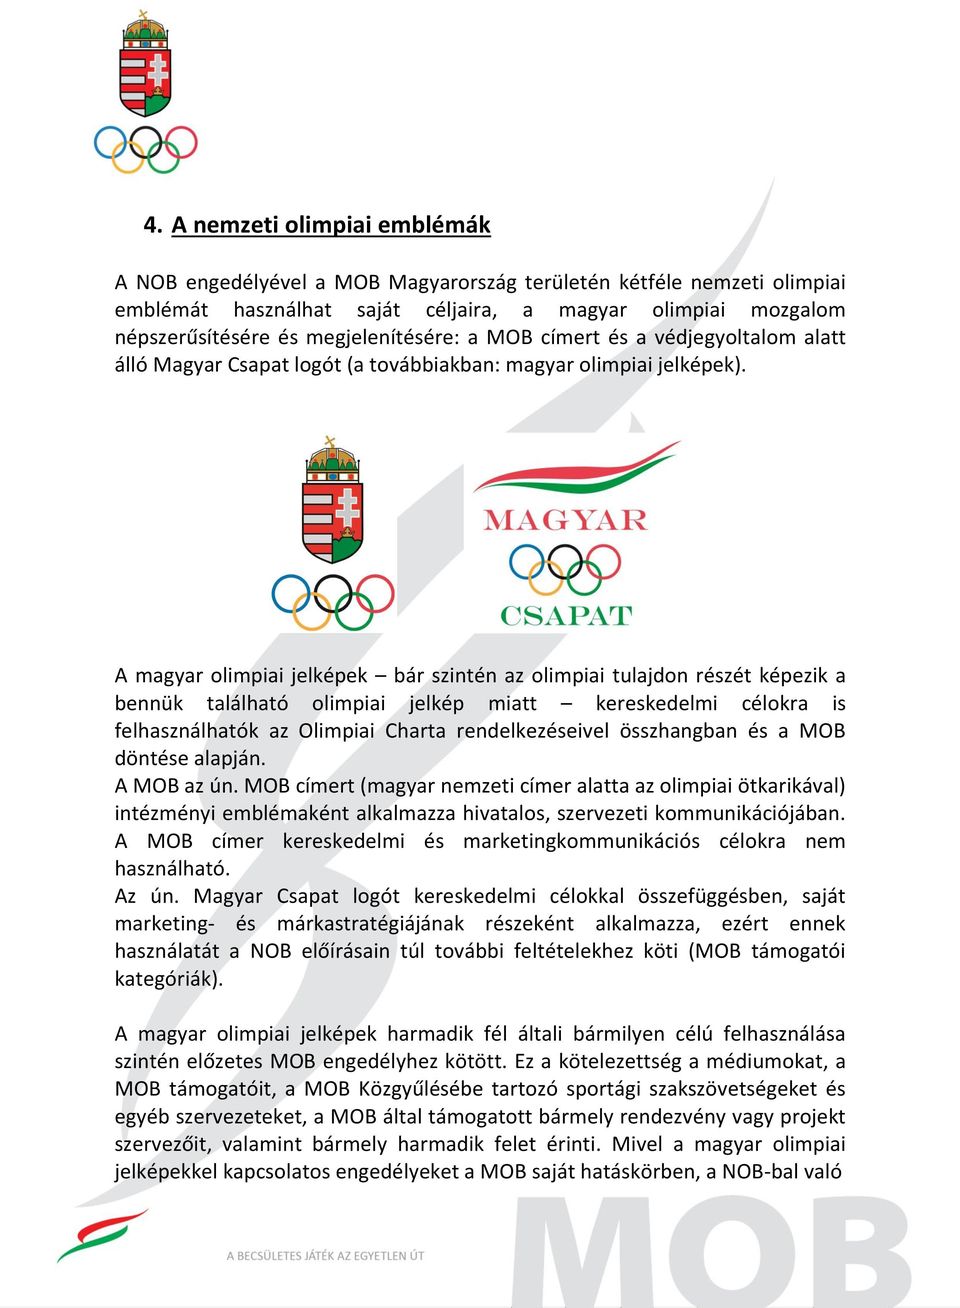 A magyar olimpiai jelképek bár szintén az olimpiai tulajdon részét képezik a bennük található olimpiai jelkép miatt kereskedelmi célokra is felhasználhatók az Olimpiai Charta rendelkezéseivel